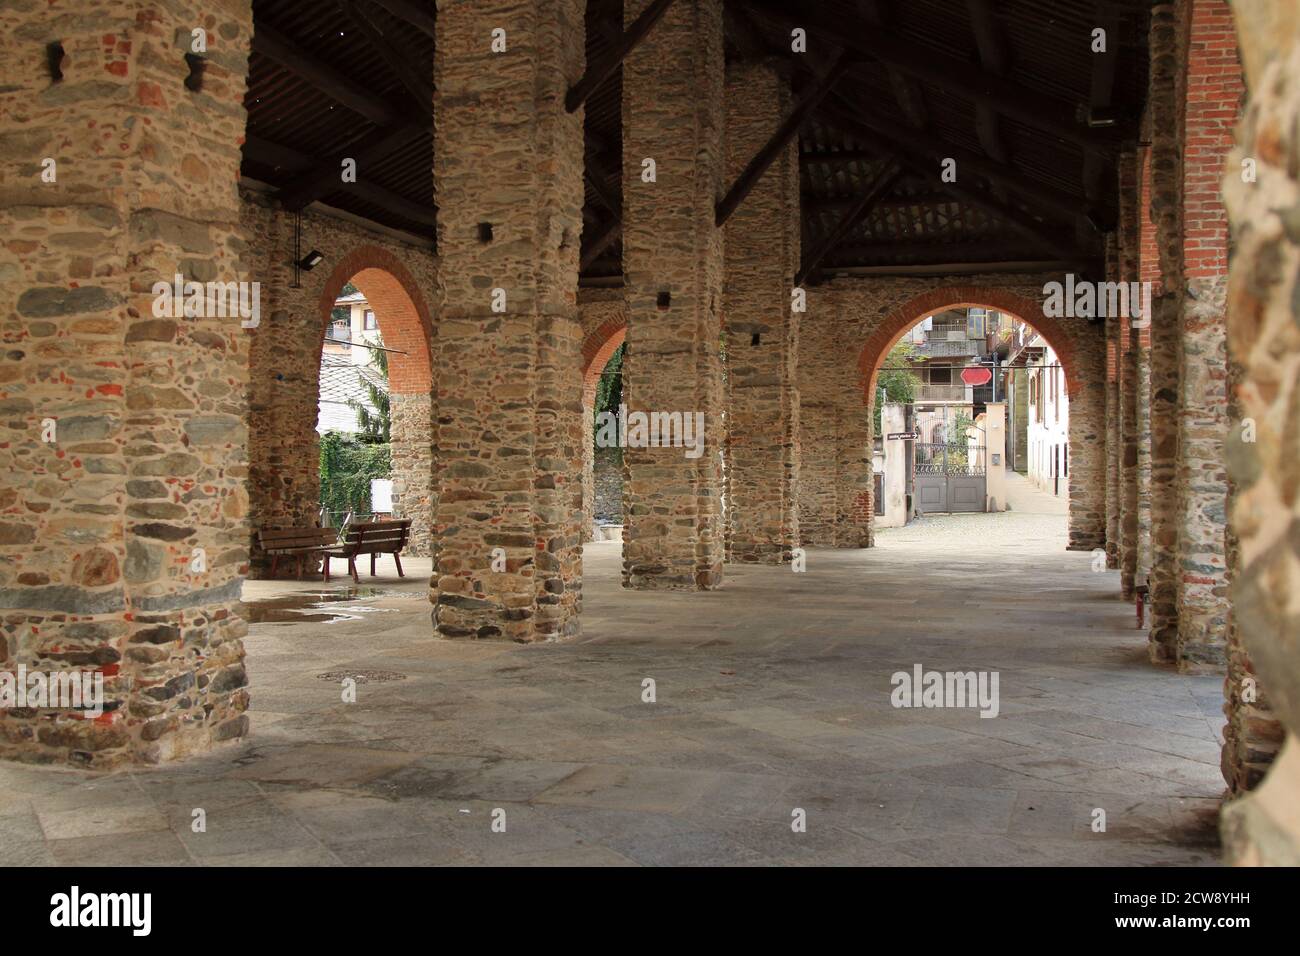 restaurato colonnato in mattoni per ospitare il mercato cittadino, in stile middleage italiano Foto Stock